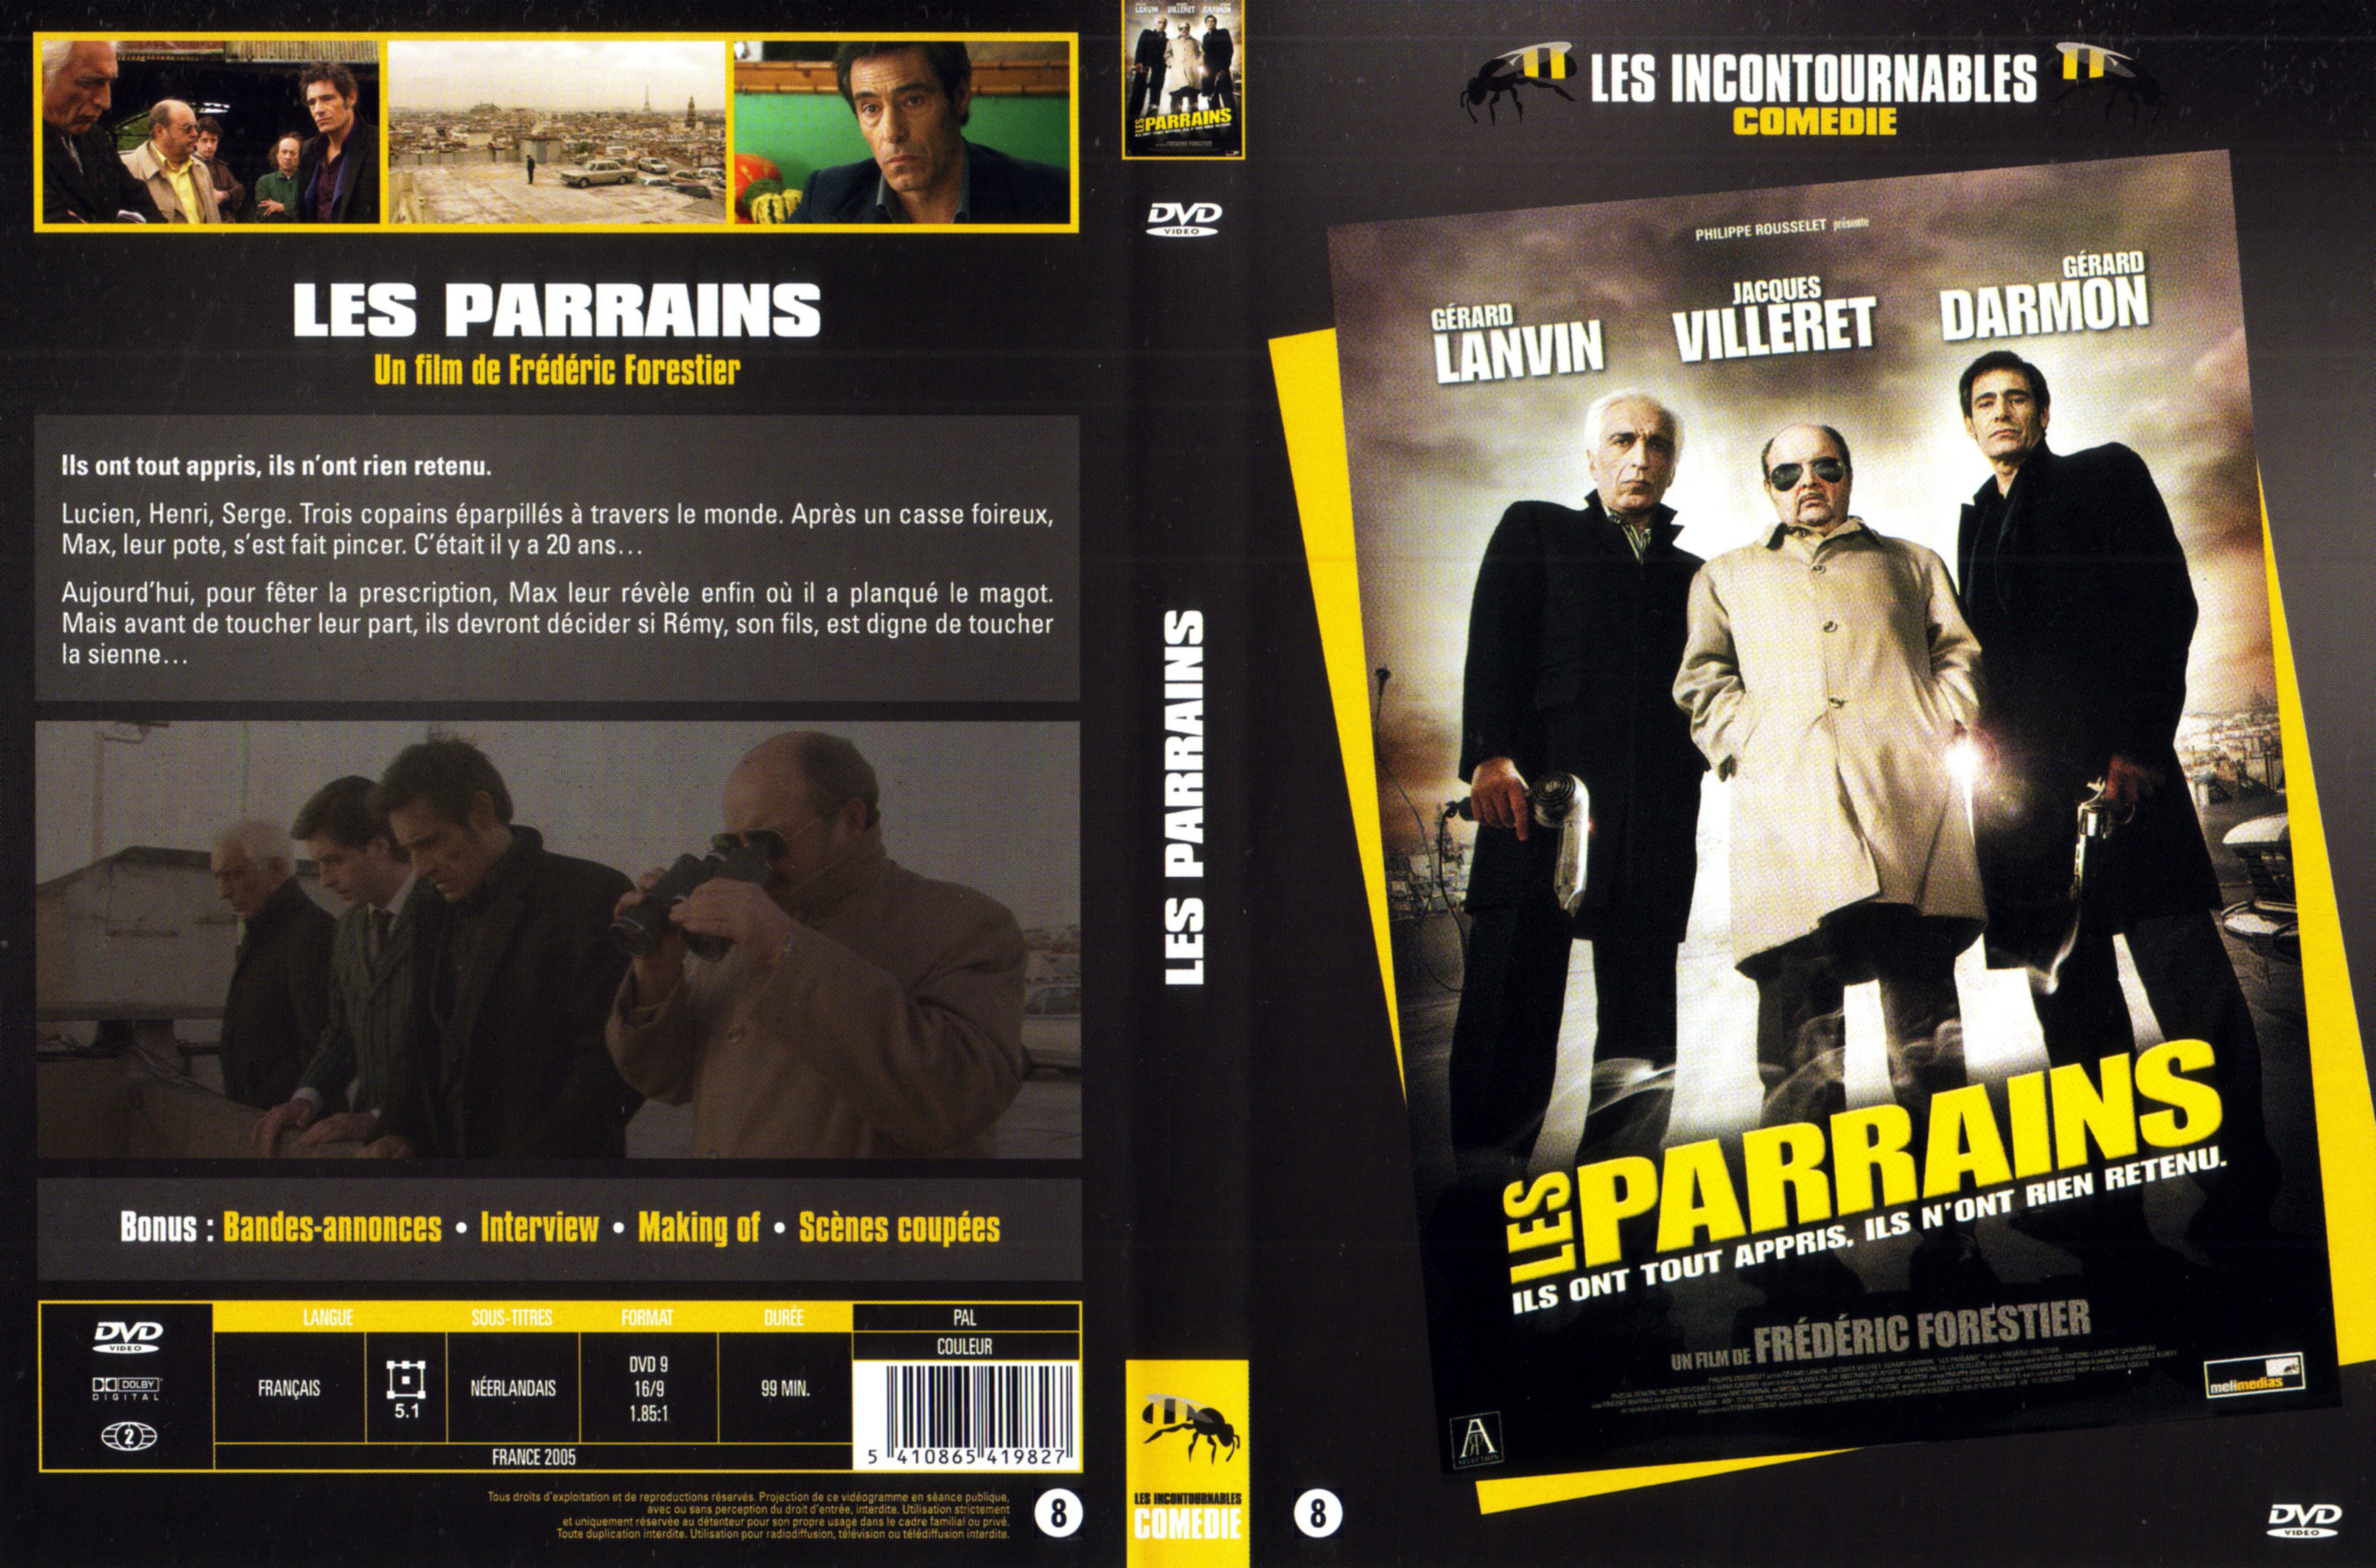 Jaquette DVD Les parrains v2